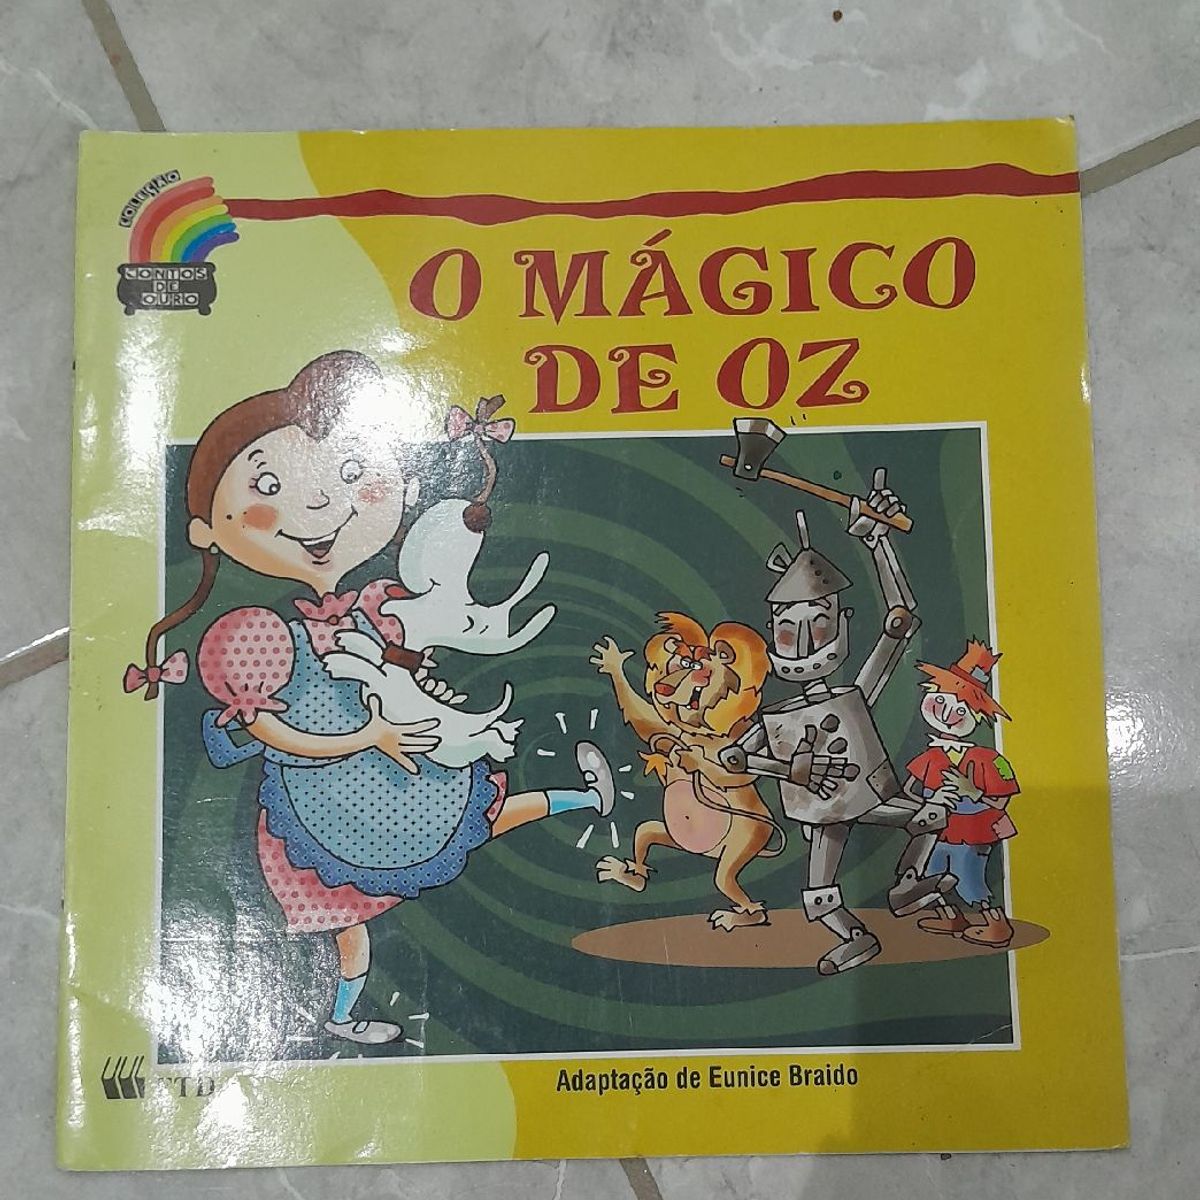 Livro infantil vende 160 mil exemplares em 2018 - EP GRUPO  Conteúdo -  Mentoria - Eventos - Marcas e Personagens - Brinquedo e Papelaria